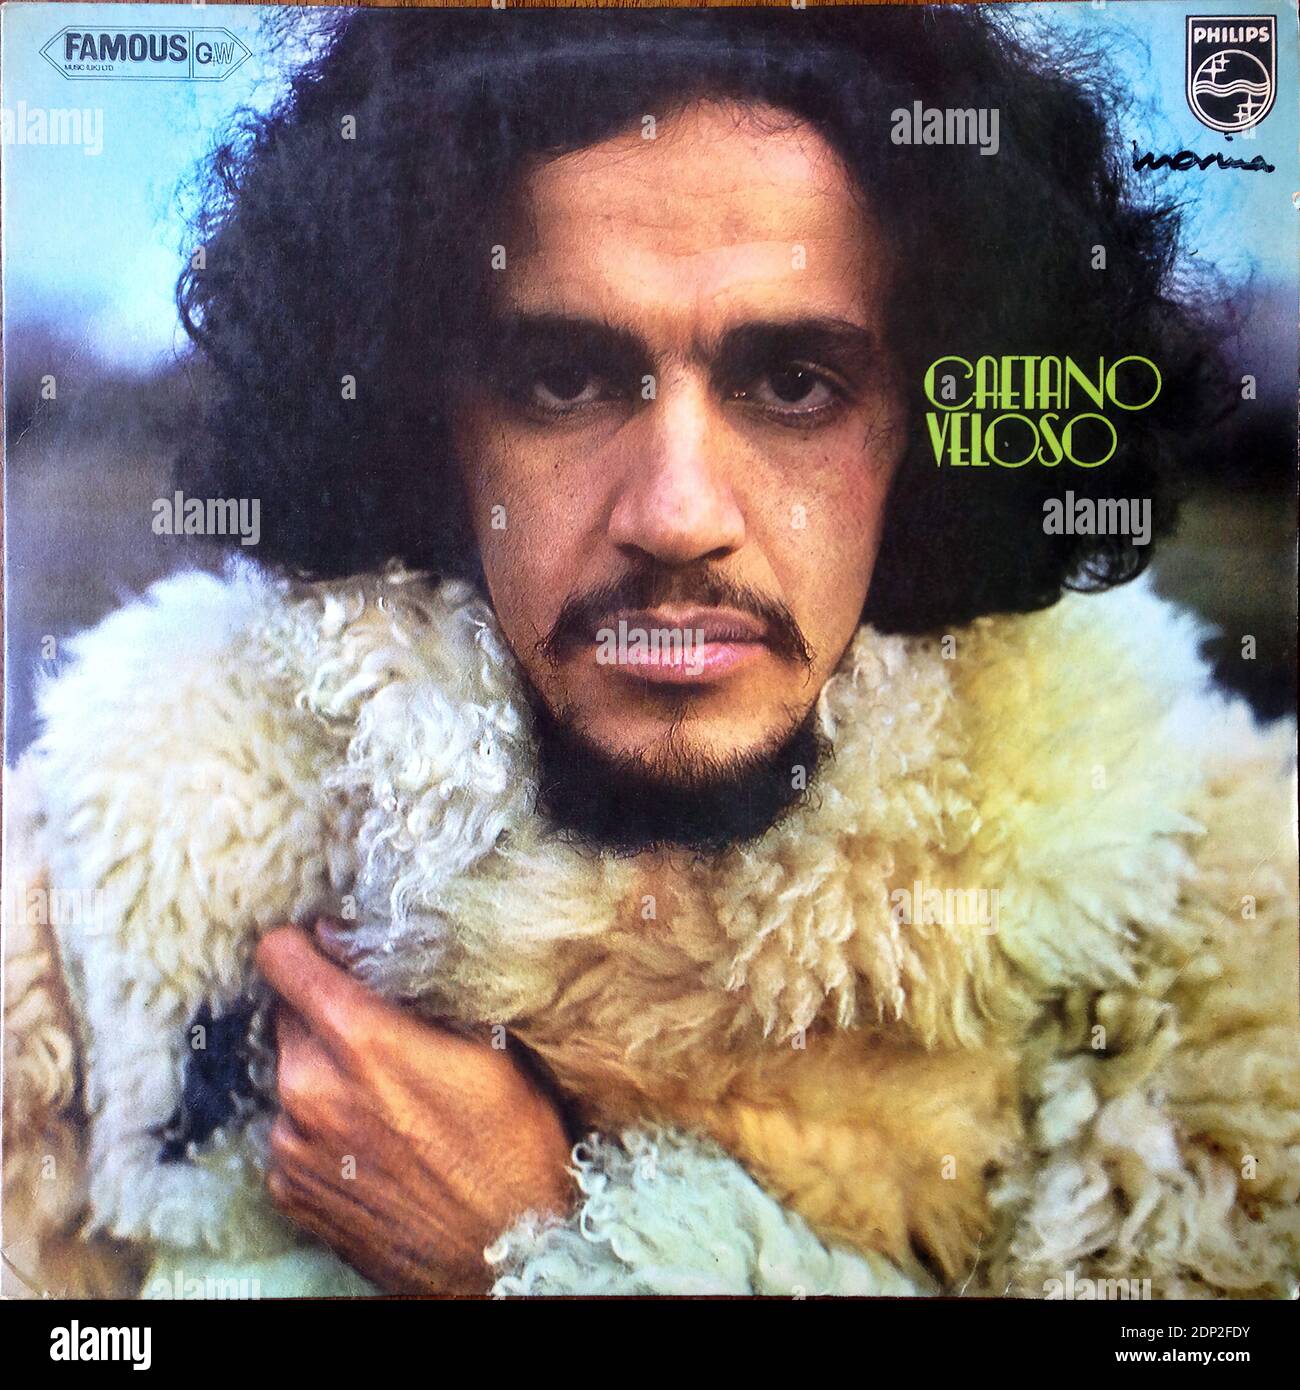 Caetano Veloso - Philips 6349 007, 1971  - Vintage vinyl album cover Stock Photo